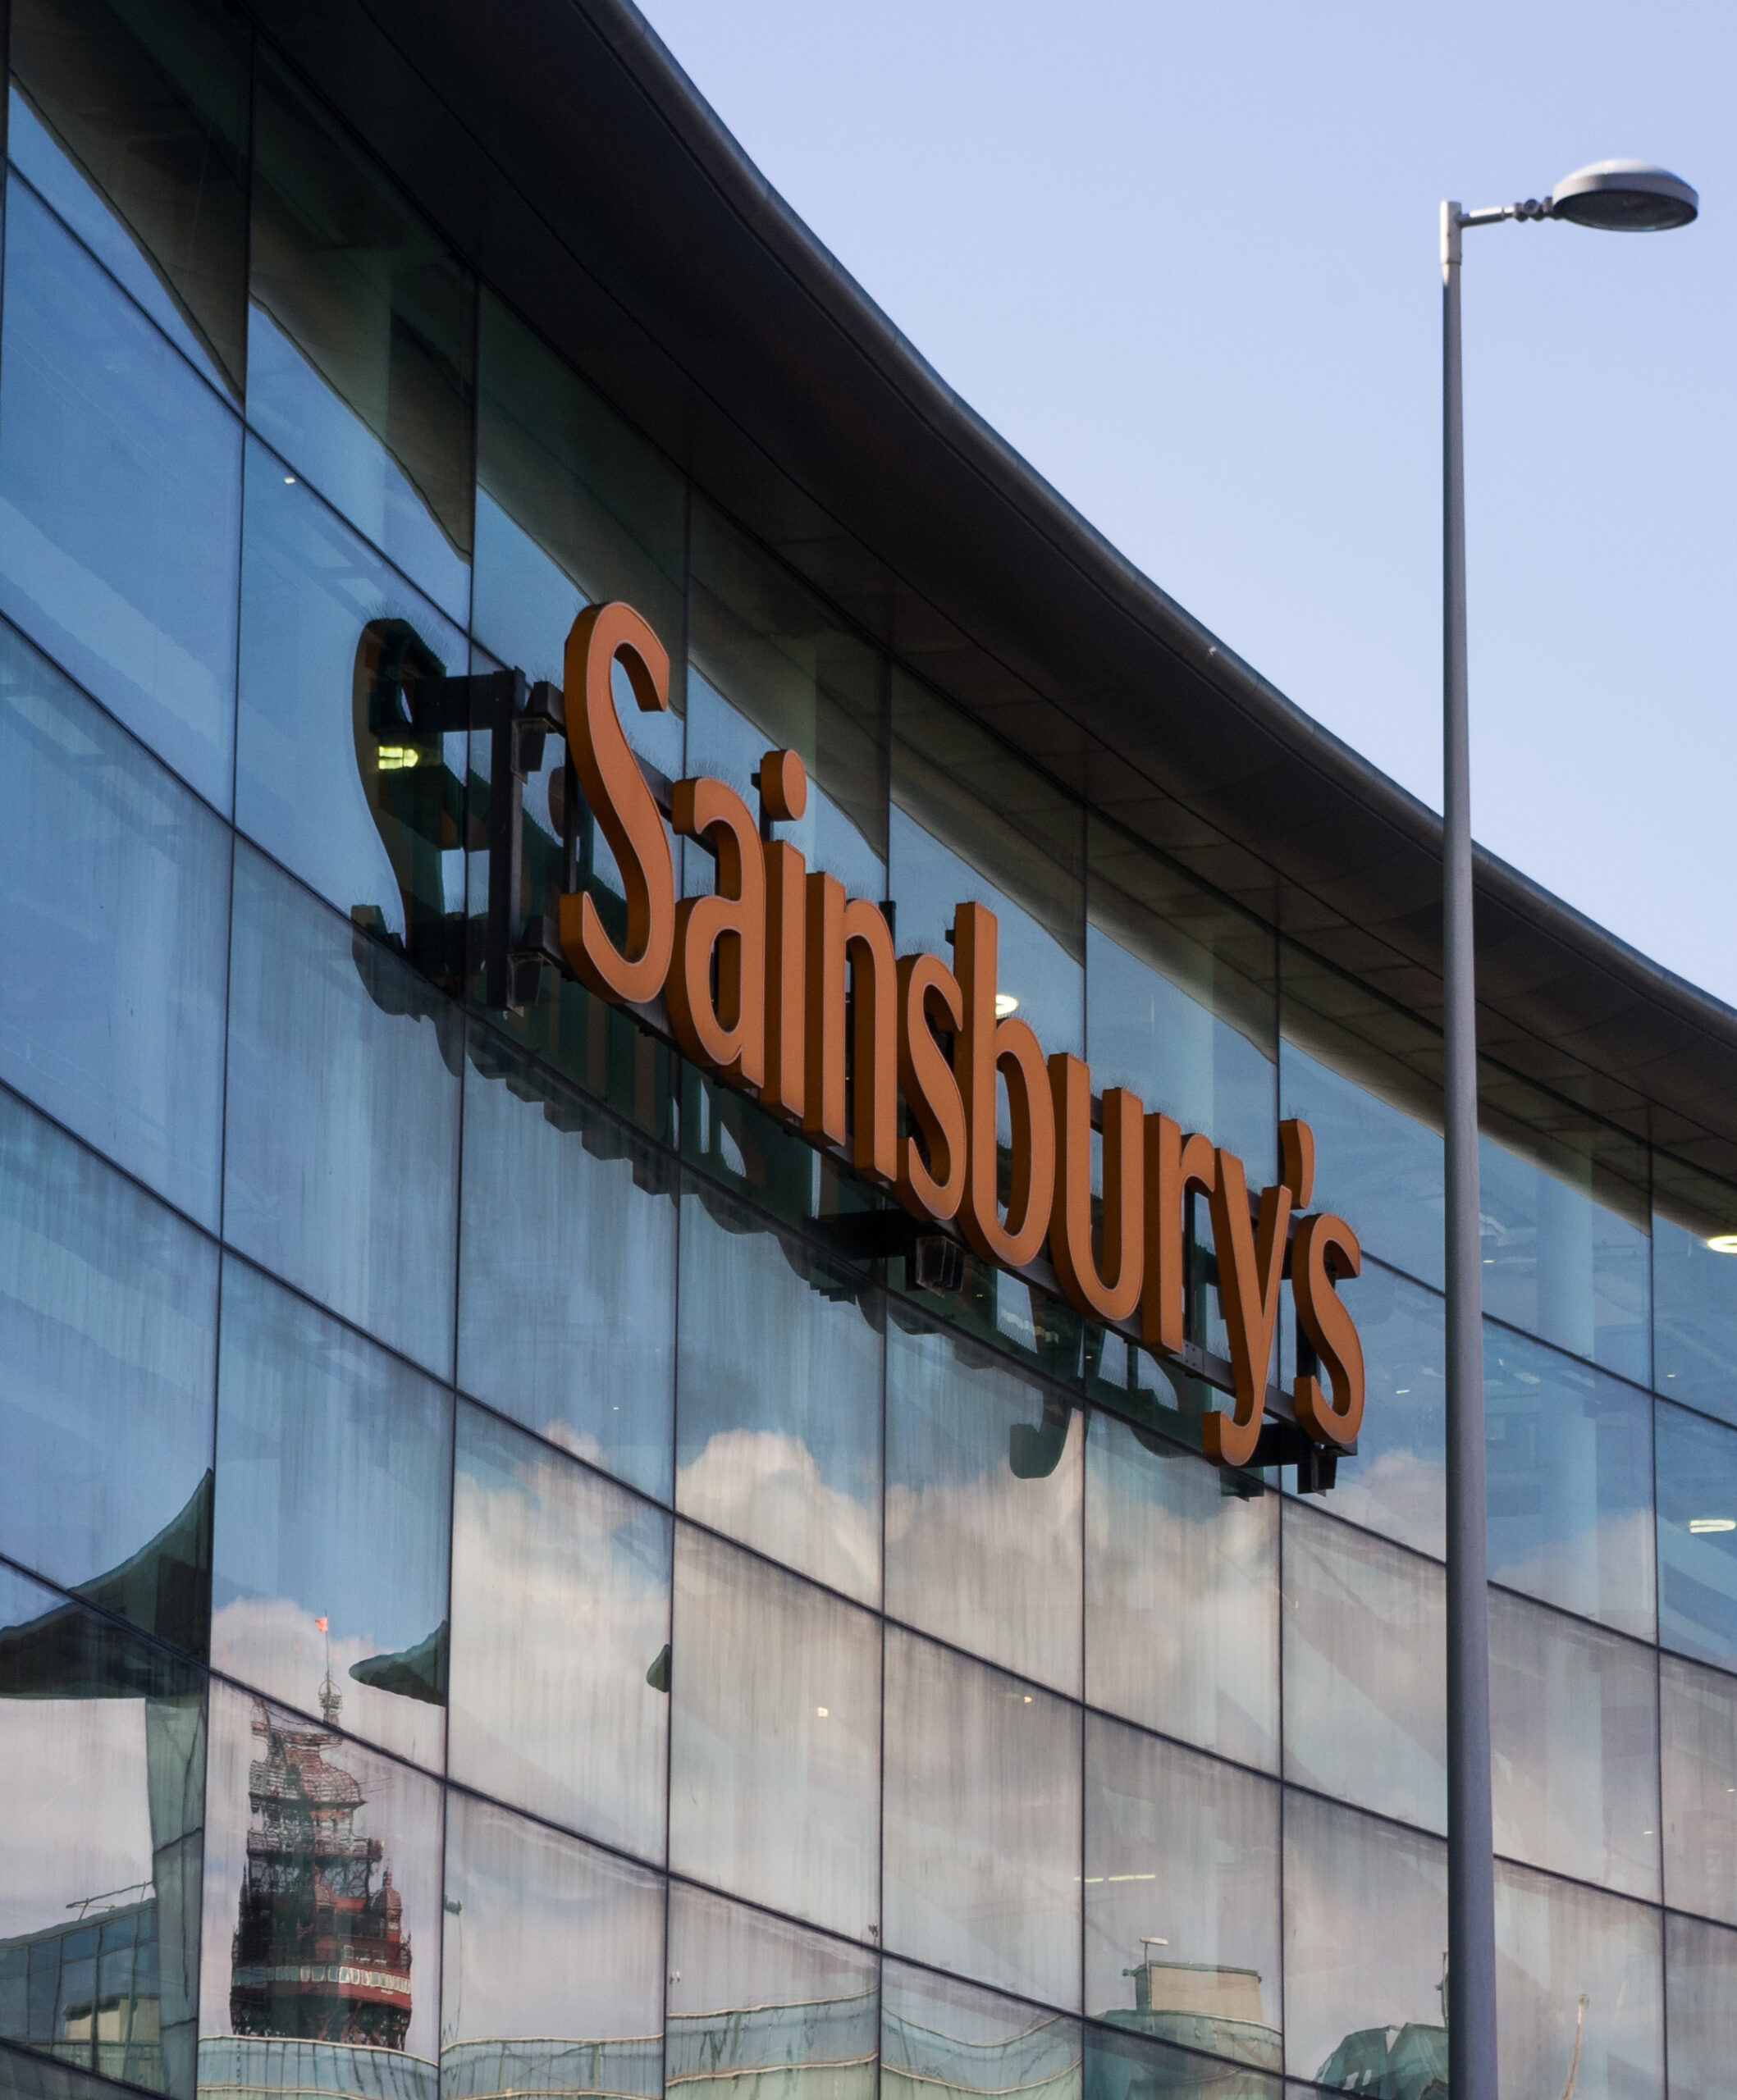 Sainsbury’s Property Division, Reino Unido: Ahorro de costes gracias a la gestión digital del patrimonio del segundo mayor minorista del Reino Unido.